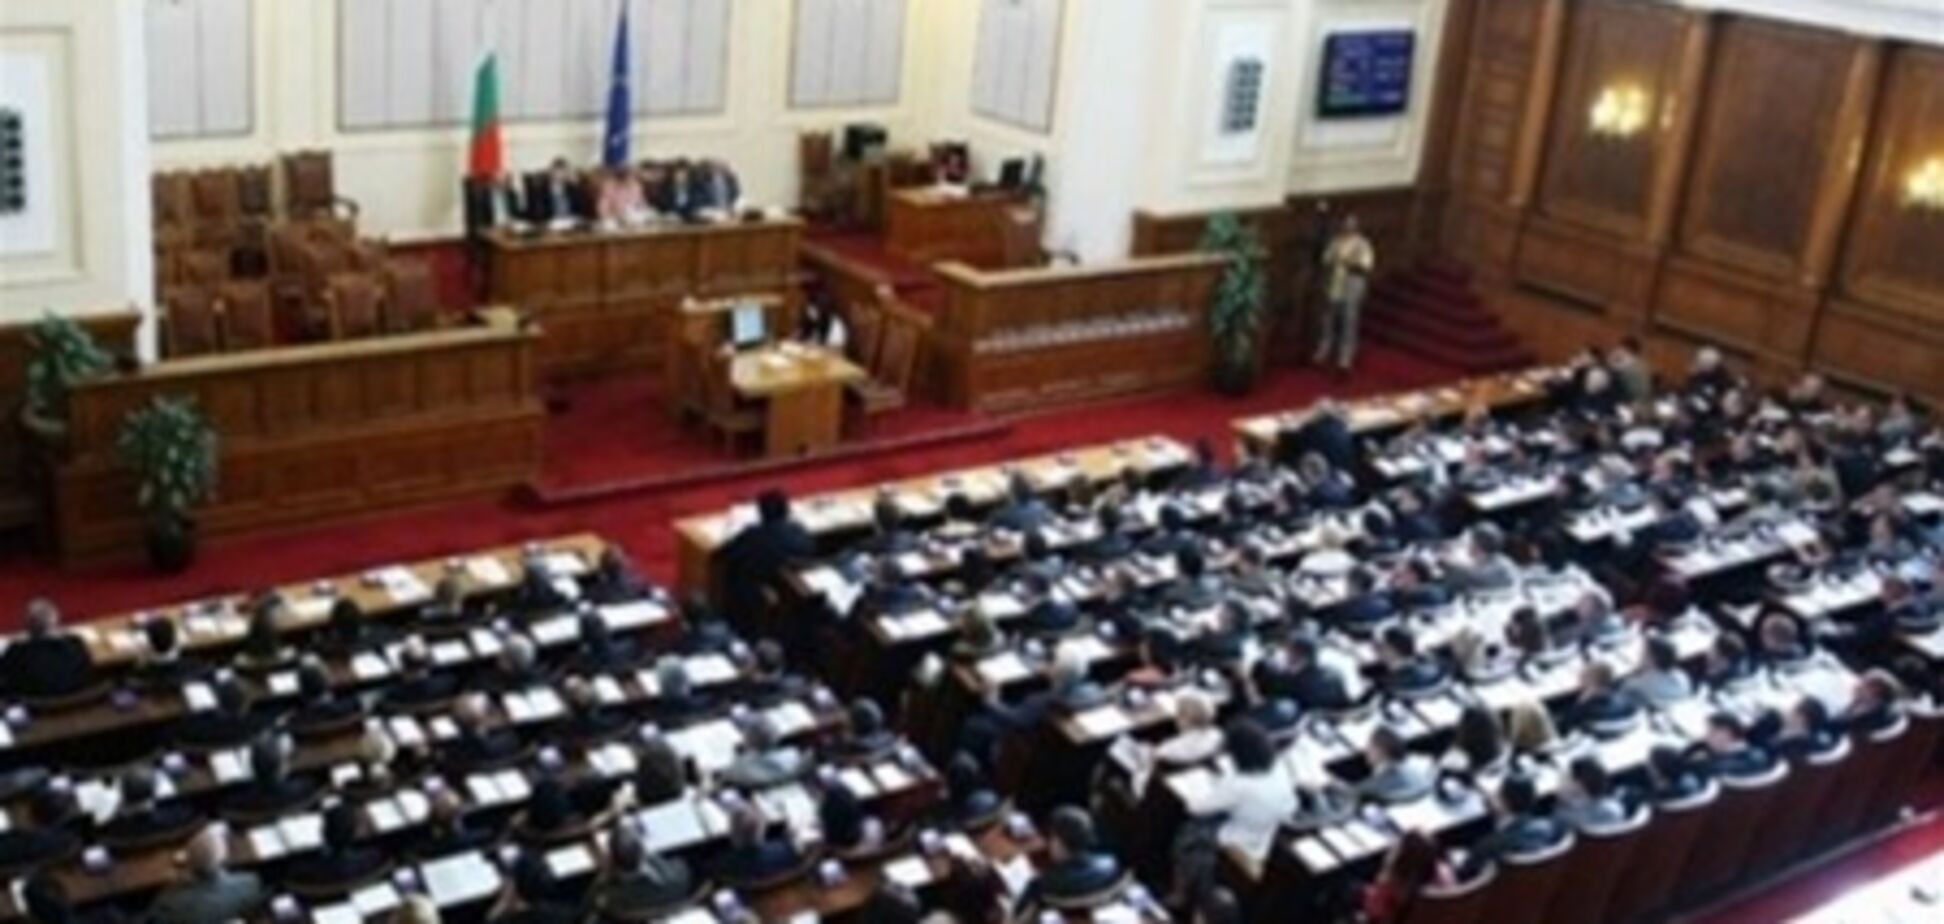 Жодна партія не отримала більшості на виборах до парламенту Болгарії